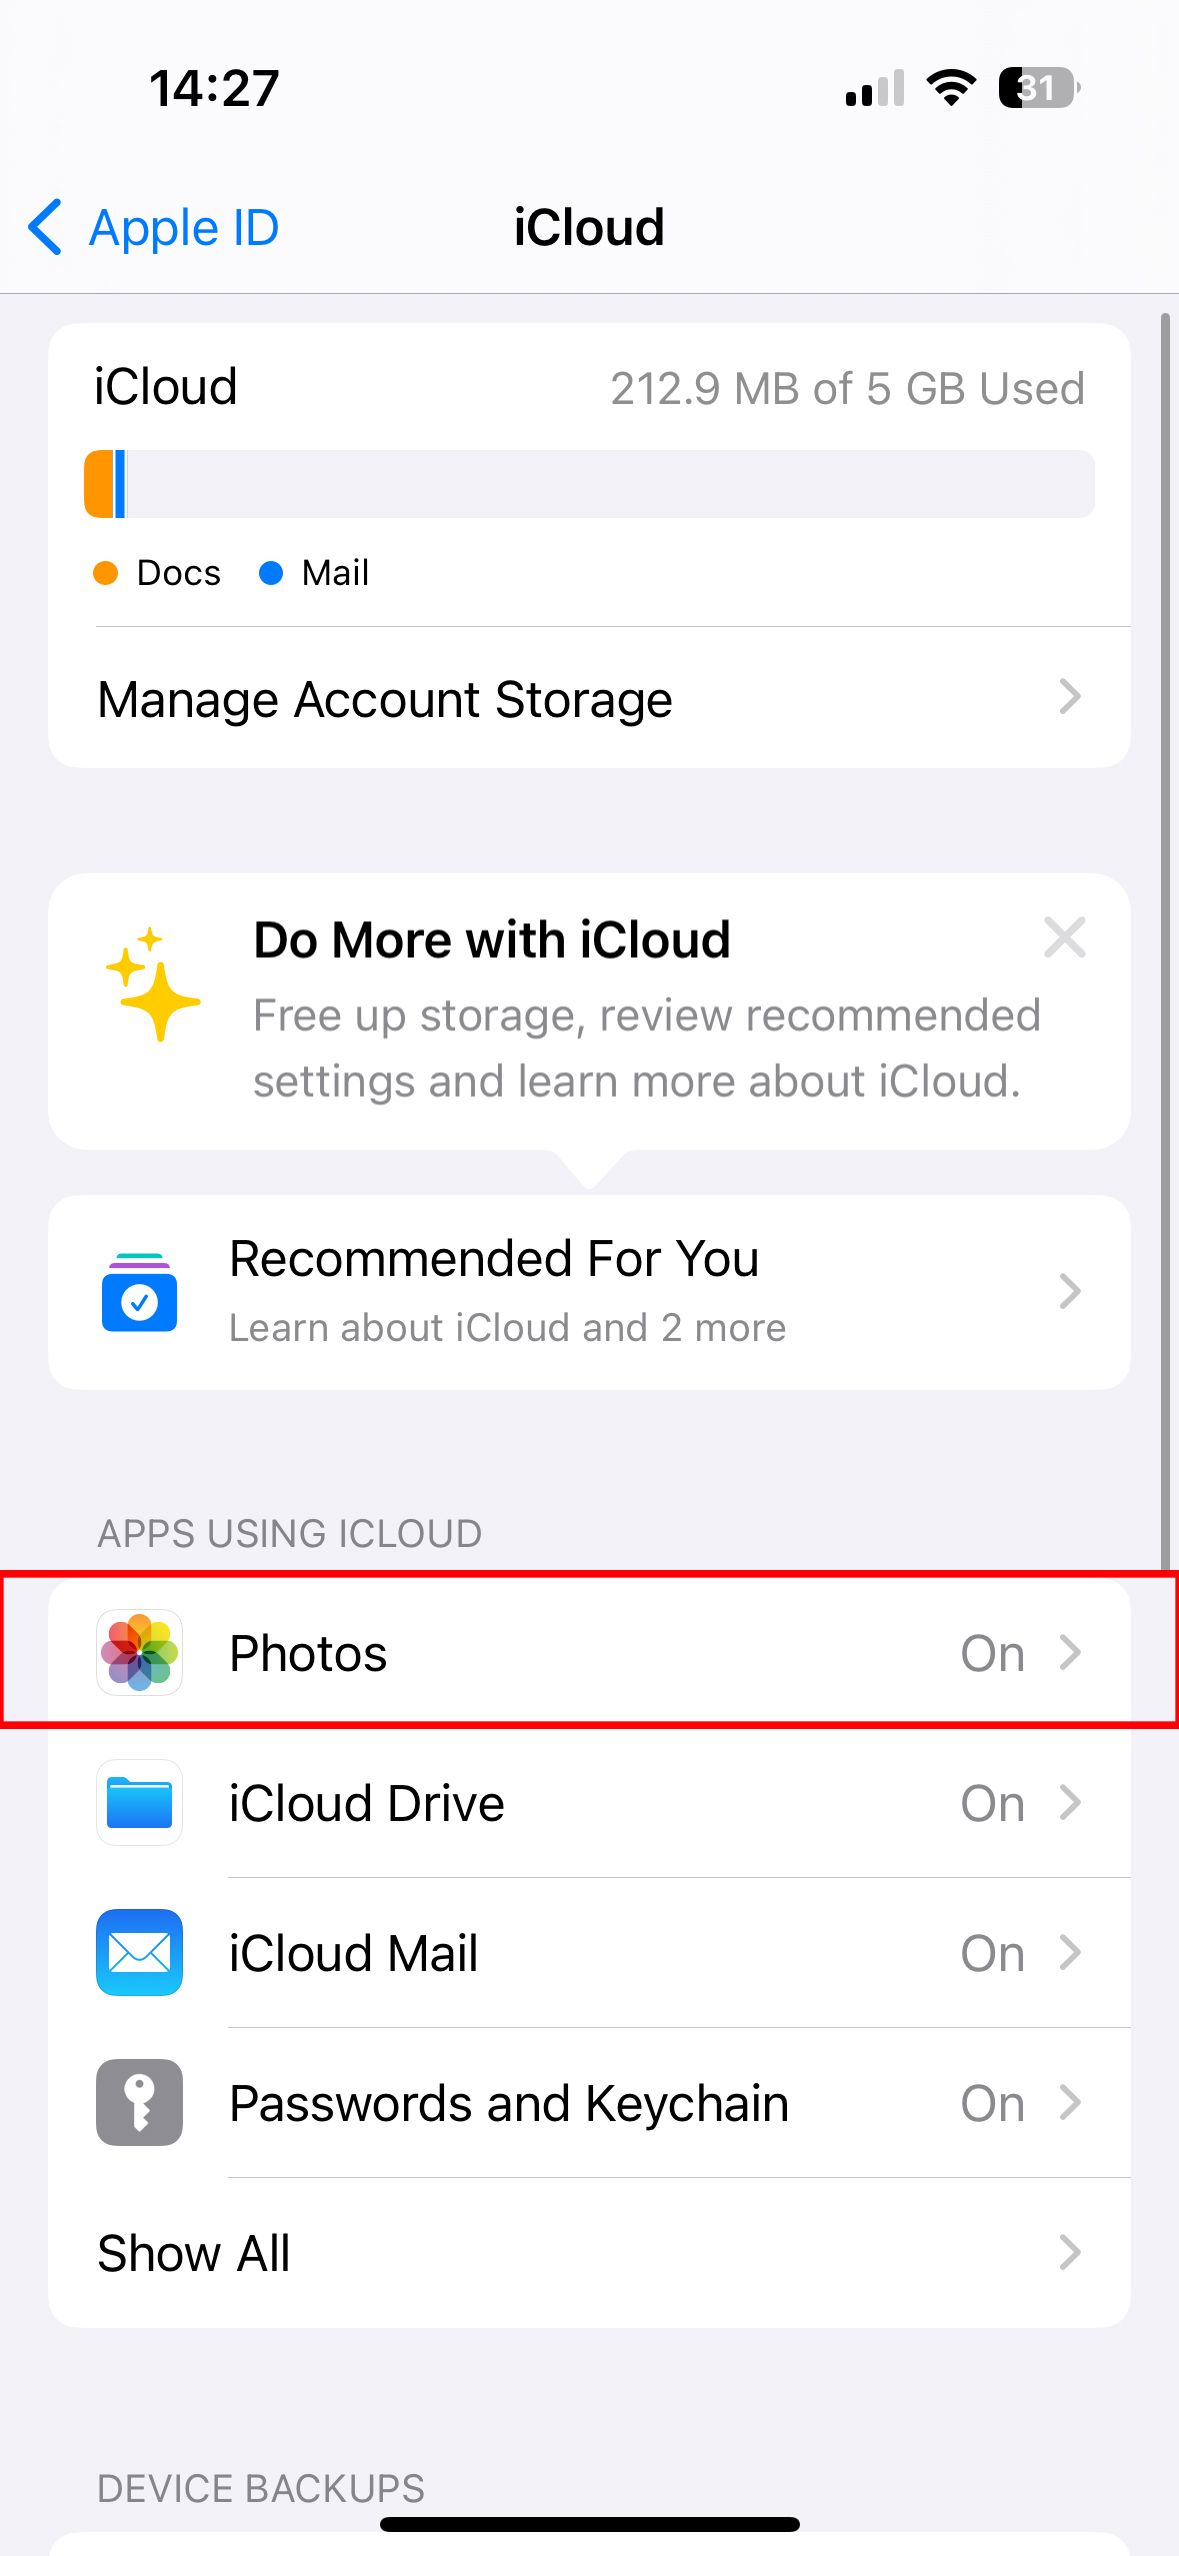 Uma captura de tela das configurações do iCloud em um iPhone, mostrando várias opções, incluindo uso de armazenamento do iCloud, "Fotos" ativado e outros serviços do iCloud.